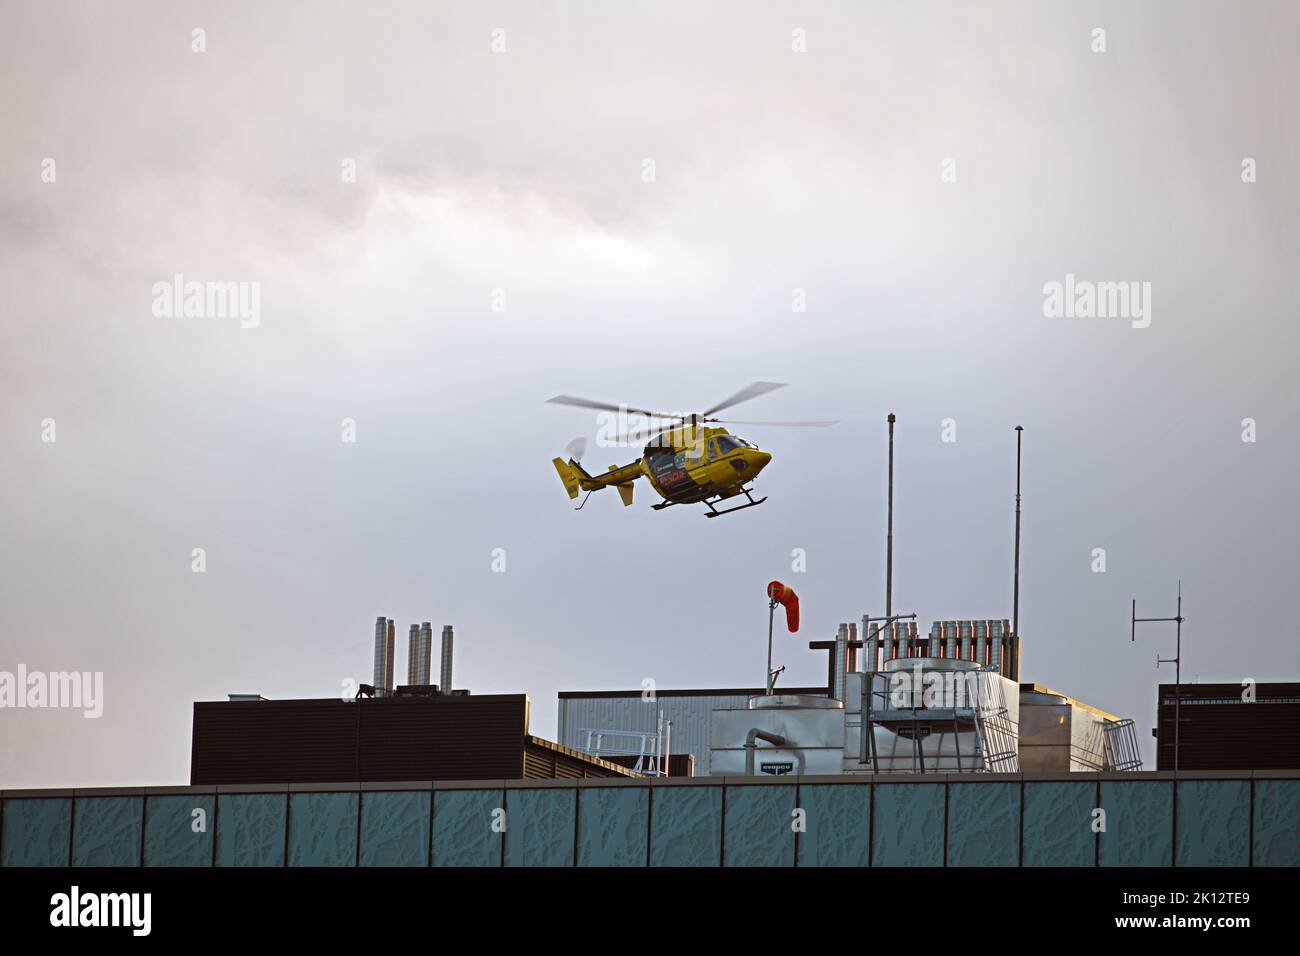 CHRISTCHURCH, NUOVA ZELANDA, 8 SETTEMBRE 2022: Un elicottero di emergenza atterra sulla cima del General Hospital di Christchurch. Immagine granulosa scattata in condizioni di scarsa illuminazione serale. Foto Stock